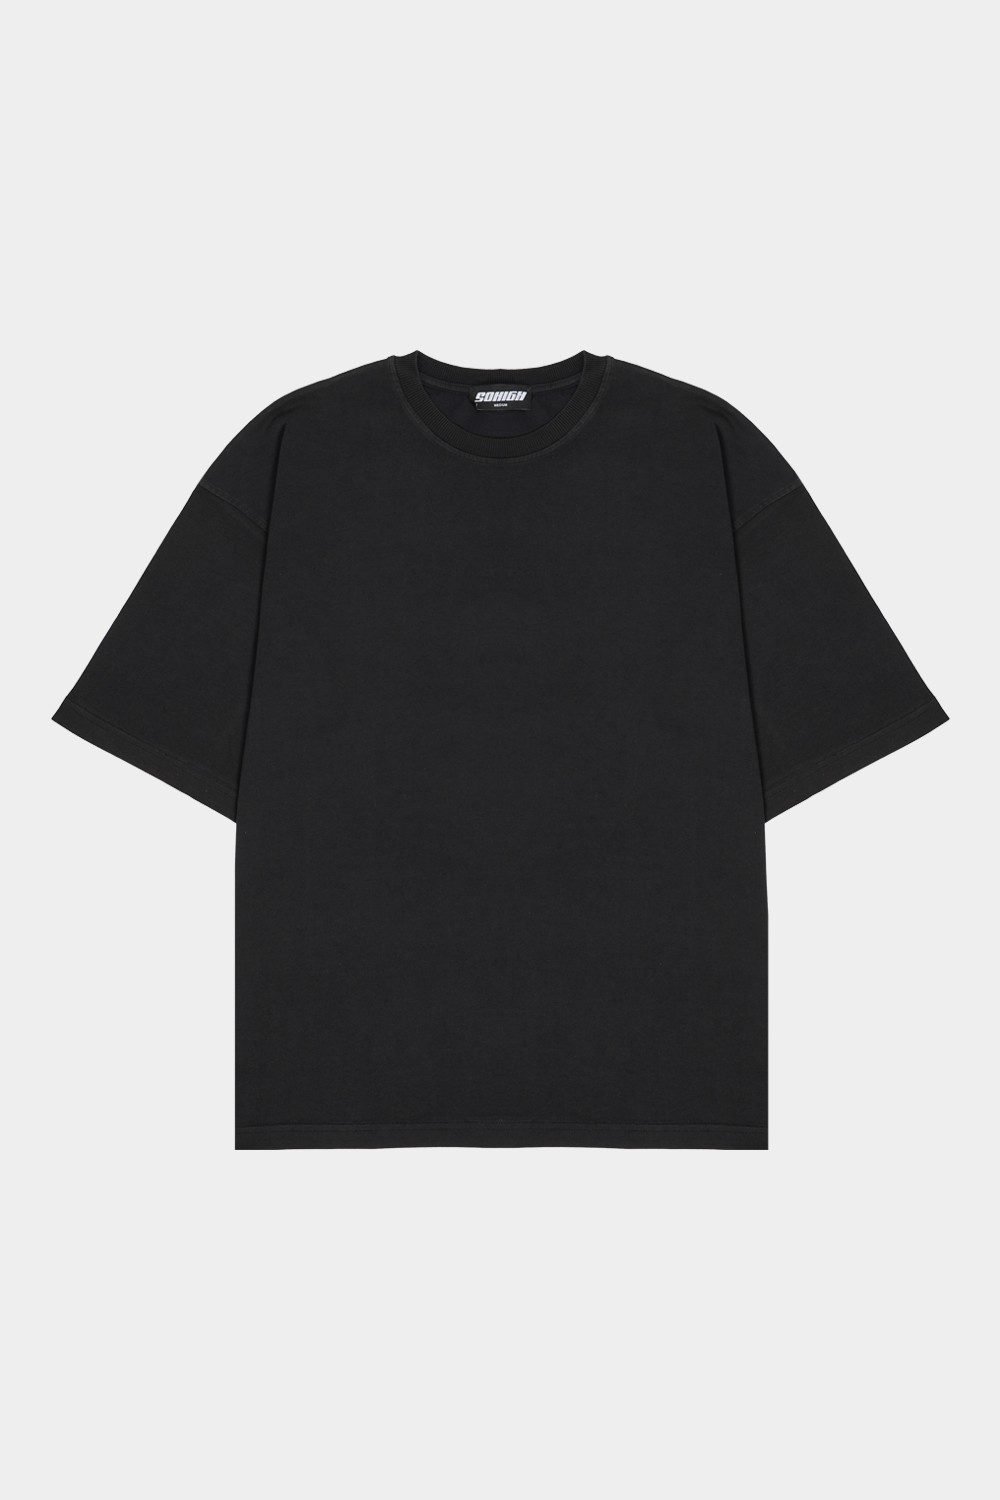 Sohigh Blank Oversized T-Shirt - Washed Black